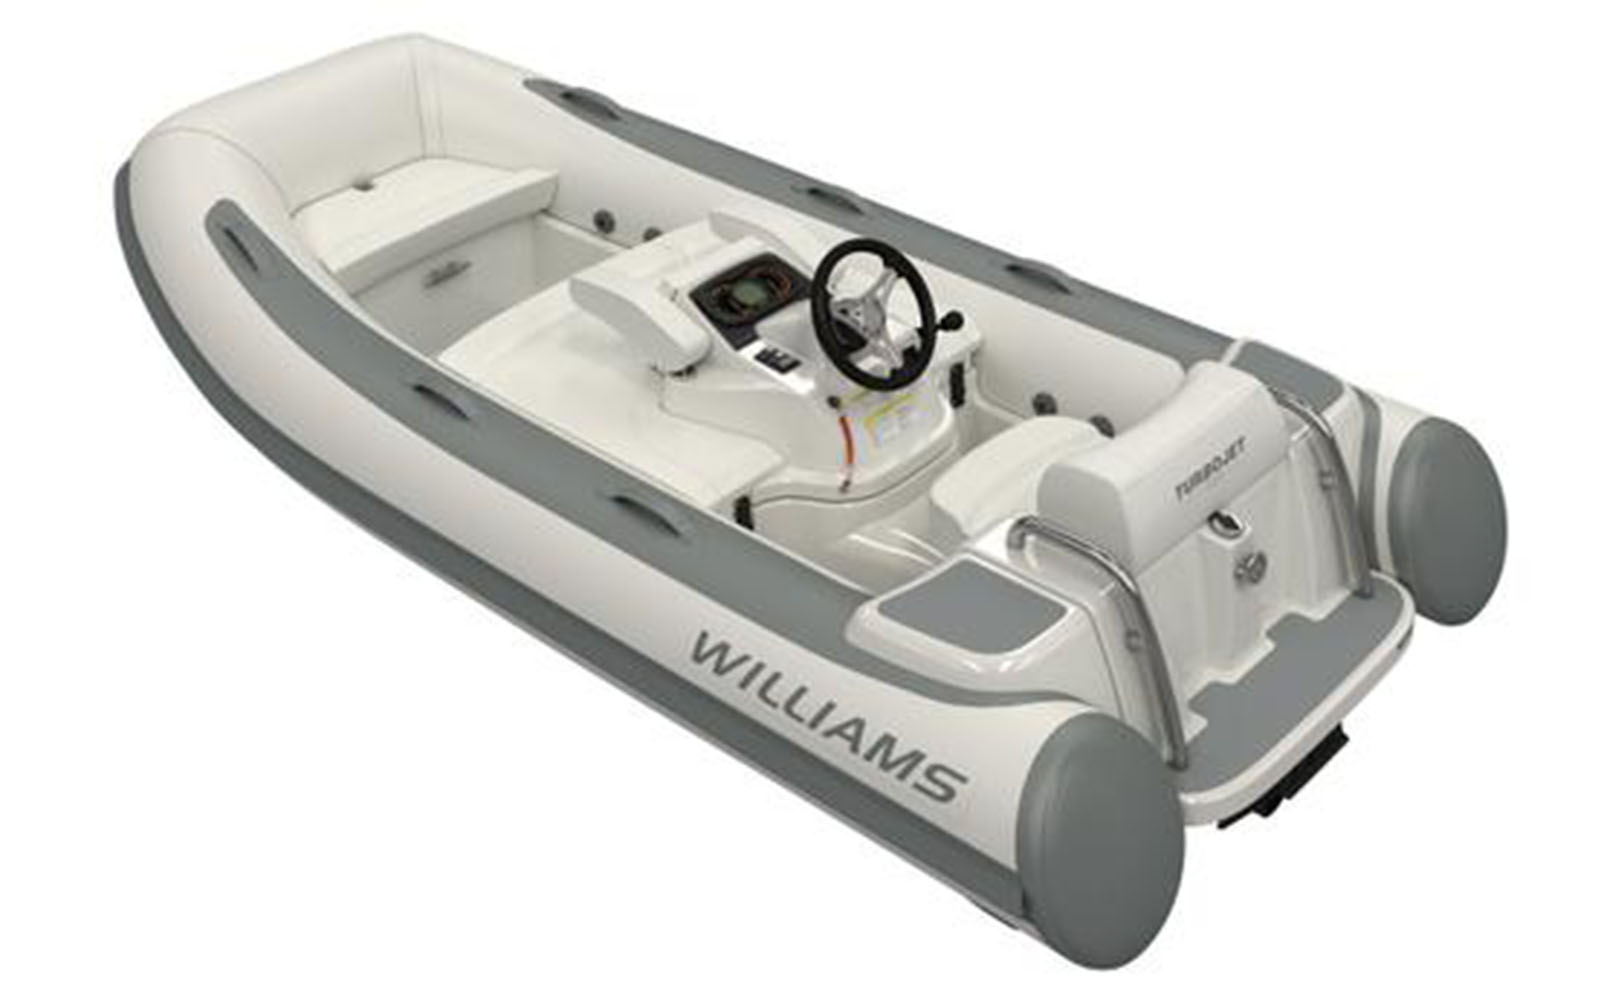 Williams-tenders-boatshopping